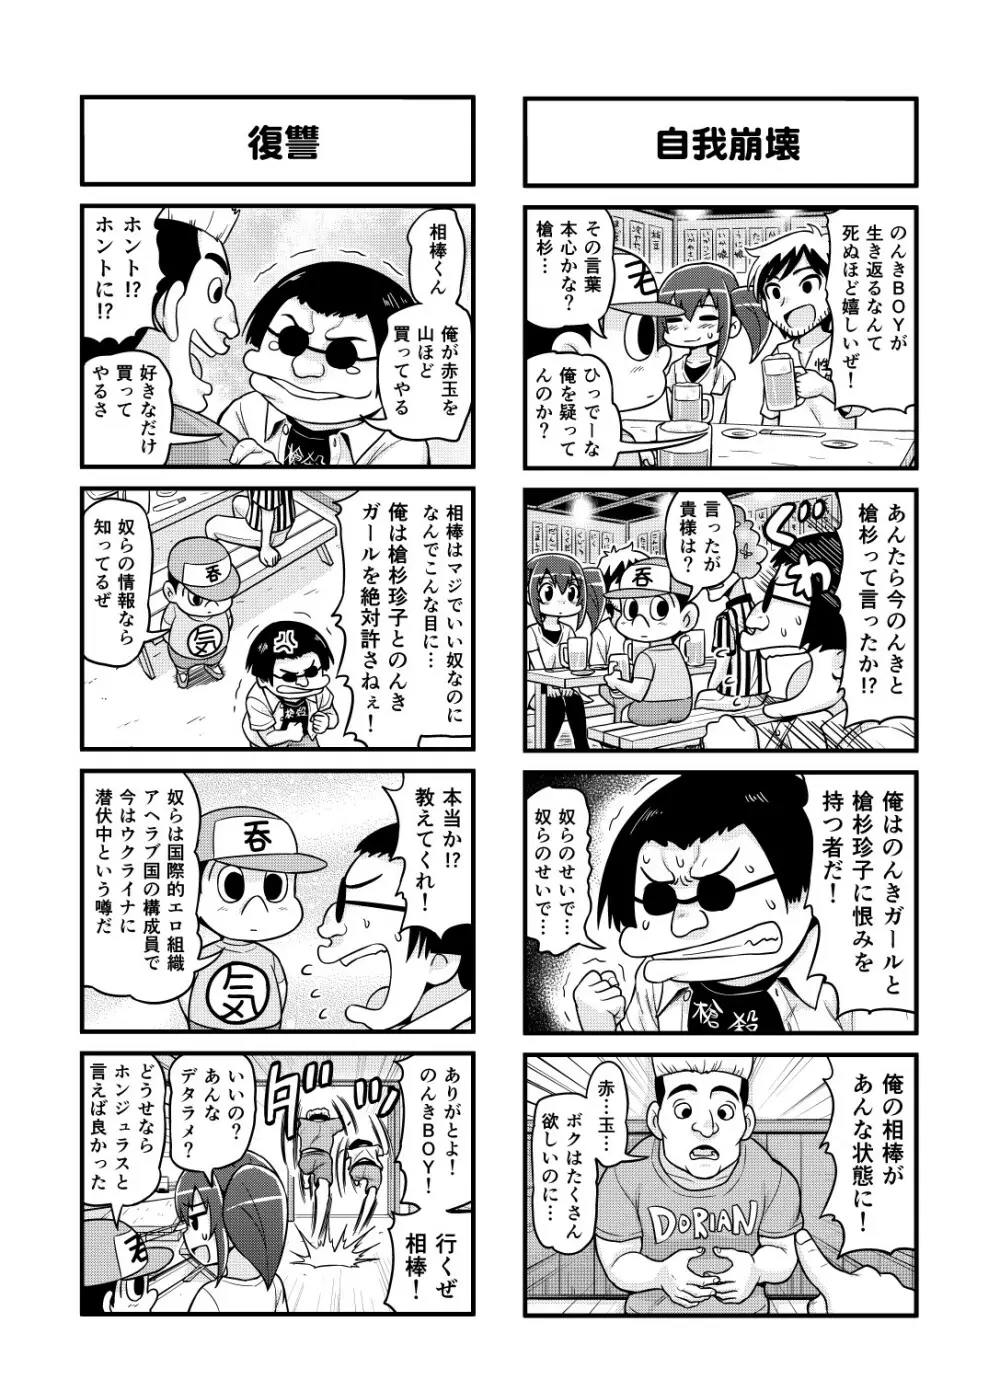 のんきBOY 1-41 91ページ